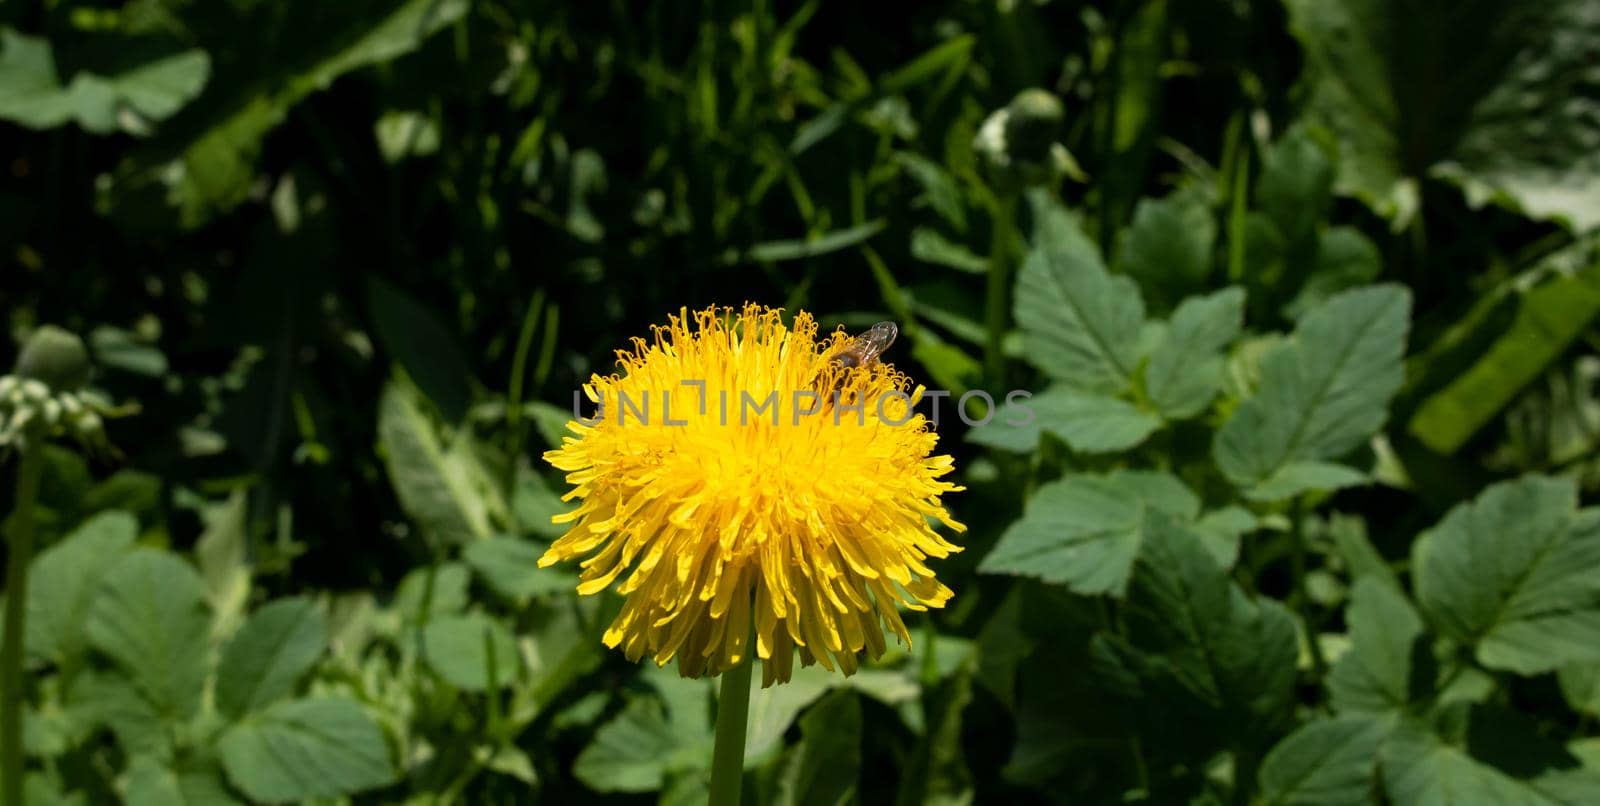 bee on a dandelion in the garden by lapushka62